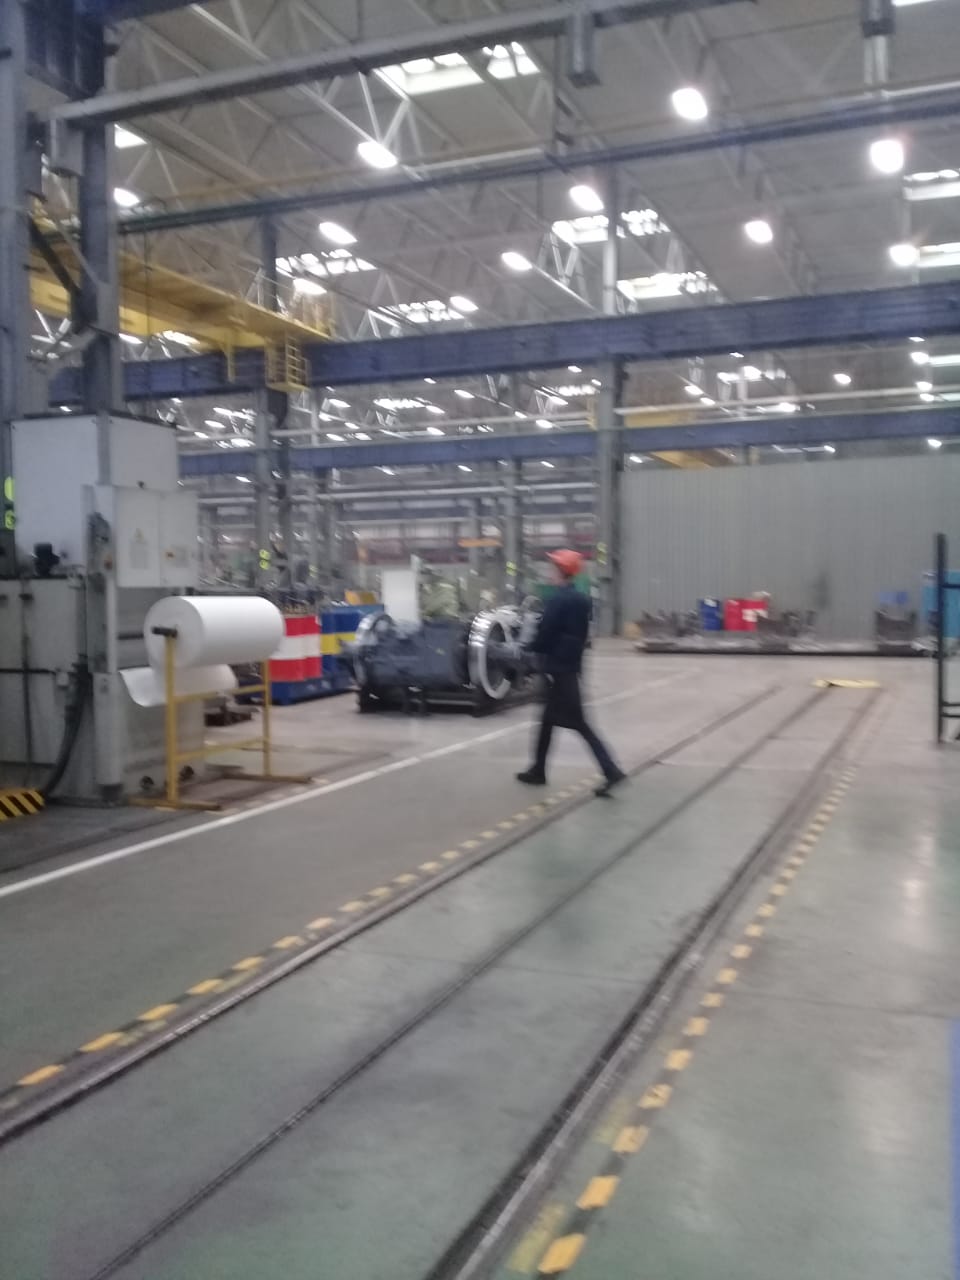  جولة لليوم السابع بمصنع جرارات السكة الحديد الروسى (13)